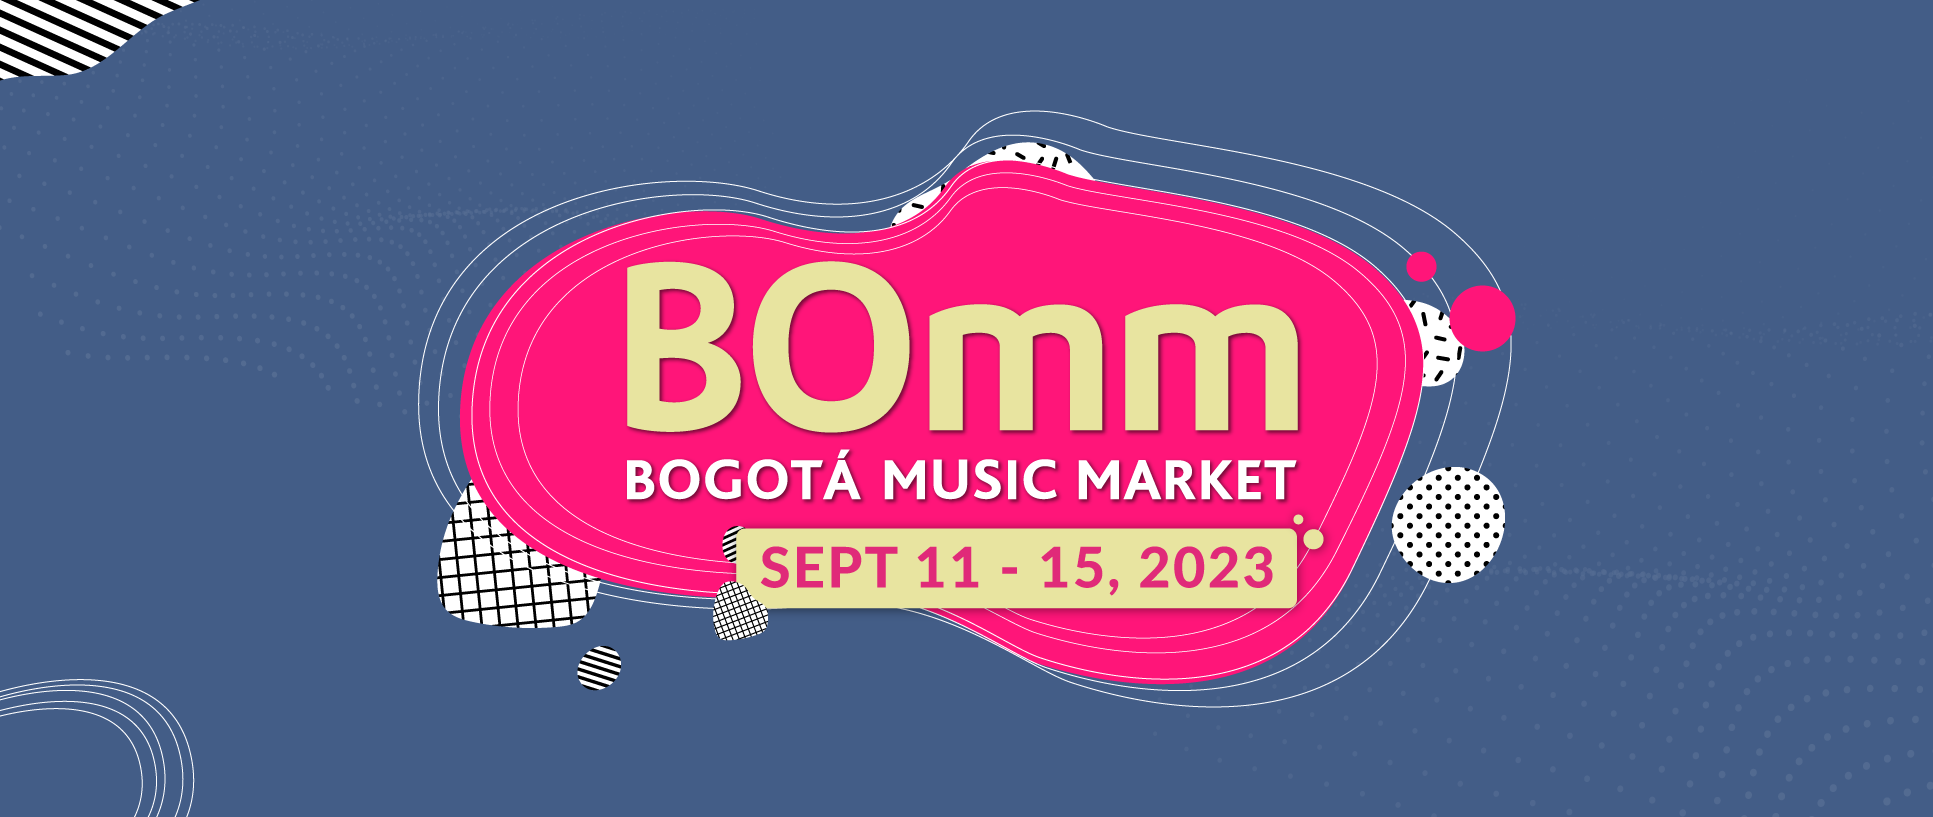 Bogotá Music Market | BOmm SEPT 11 - 15 del 2023